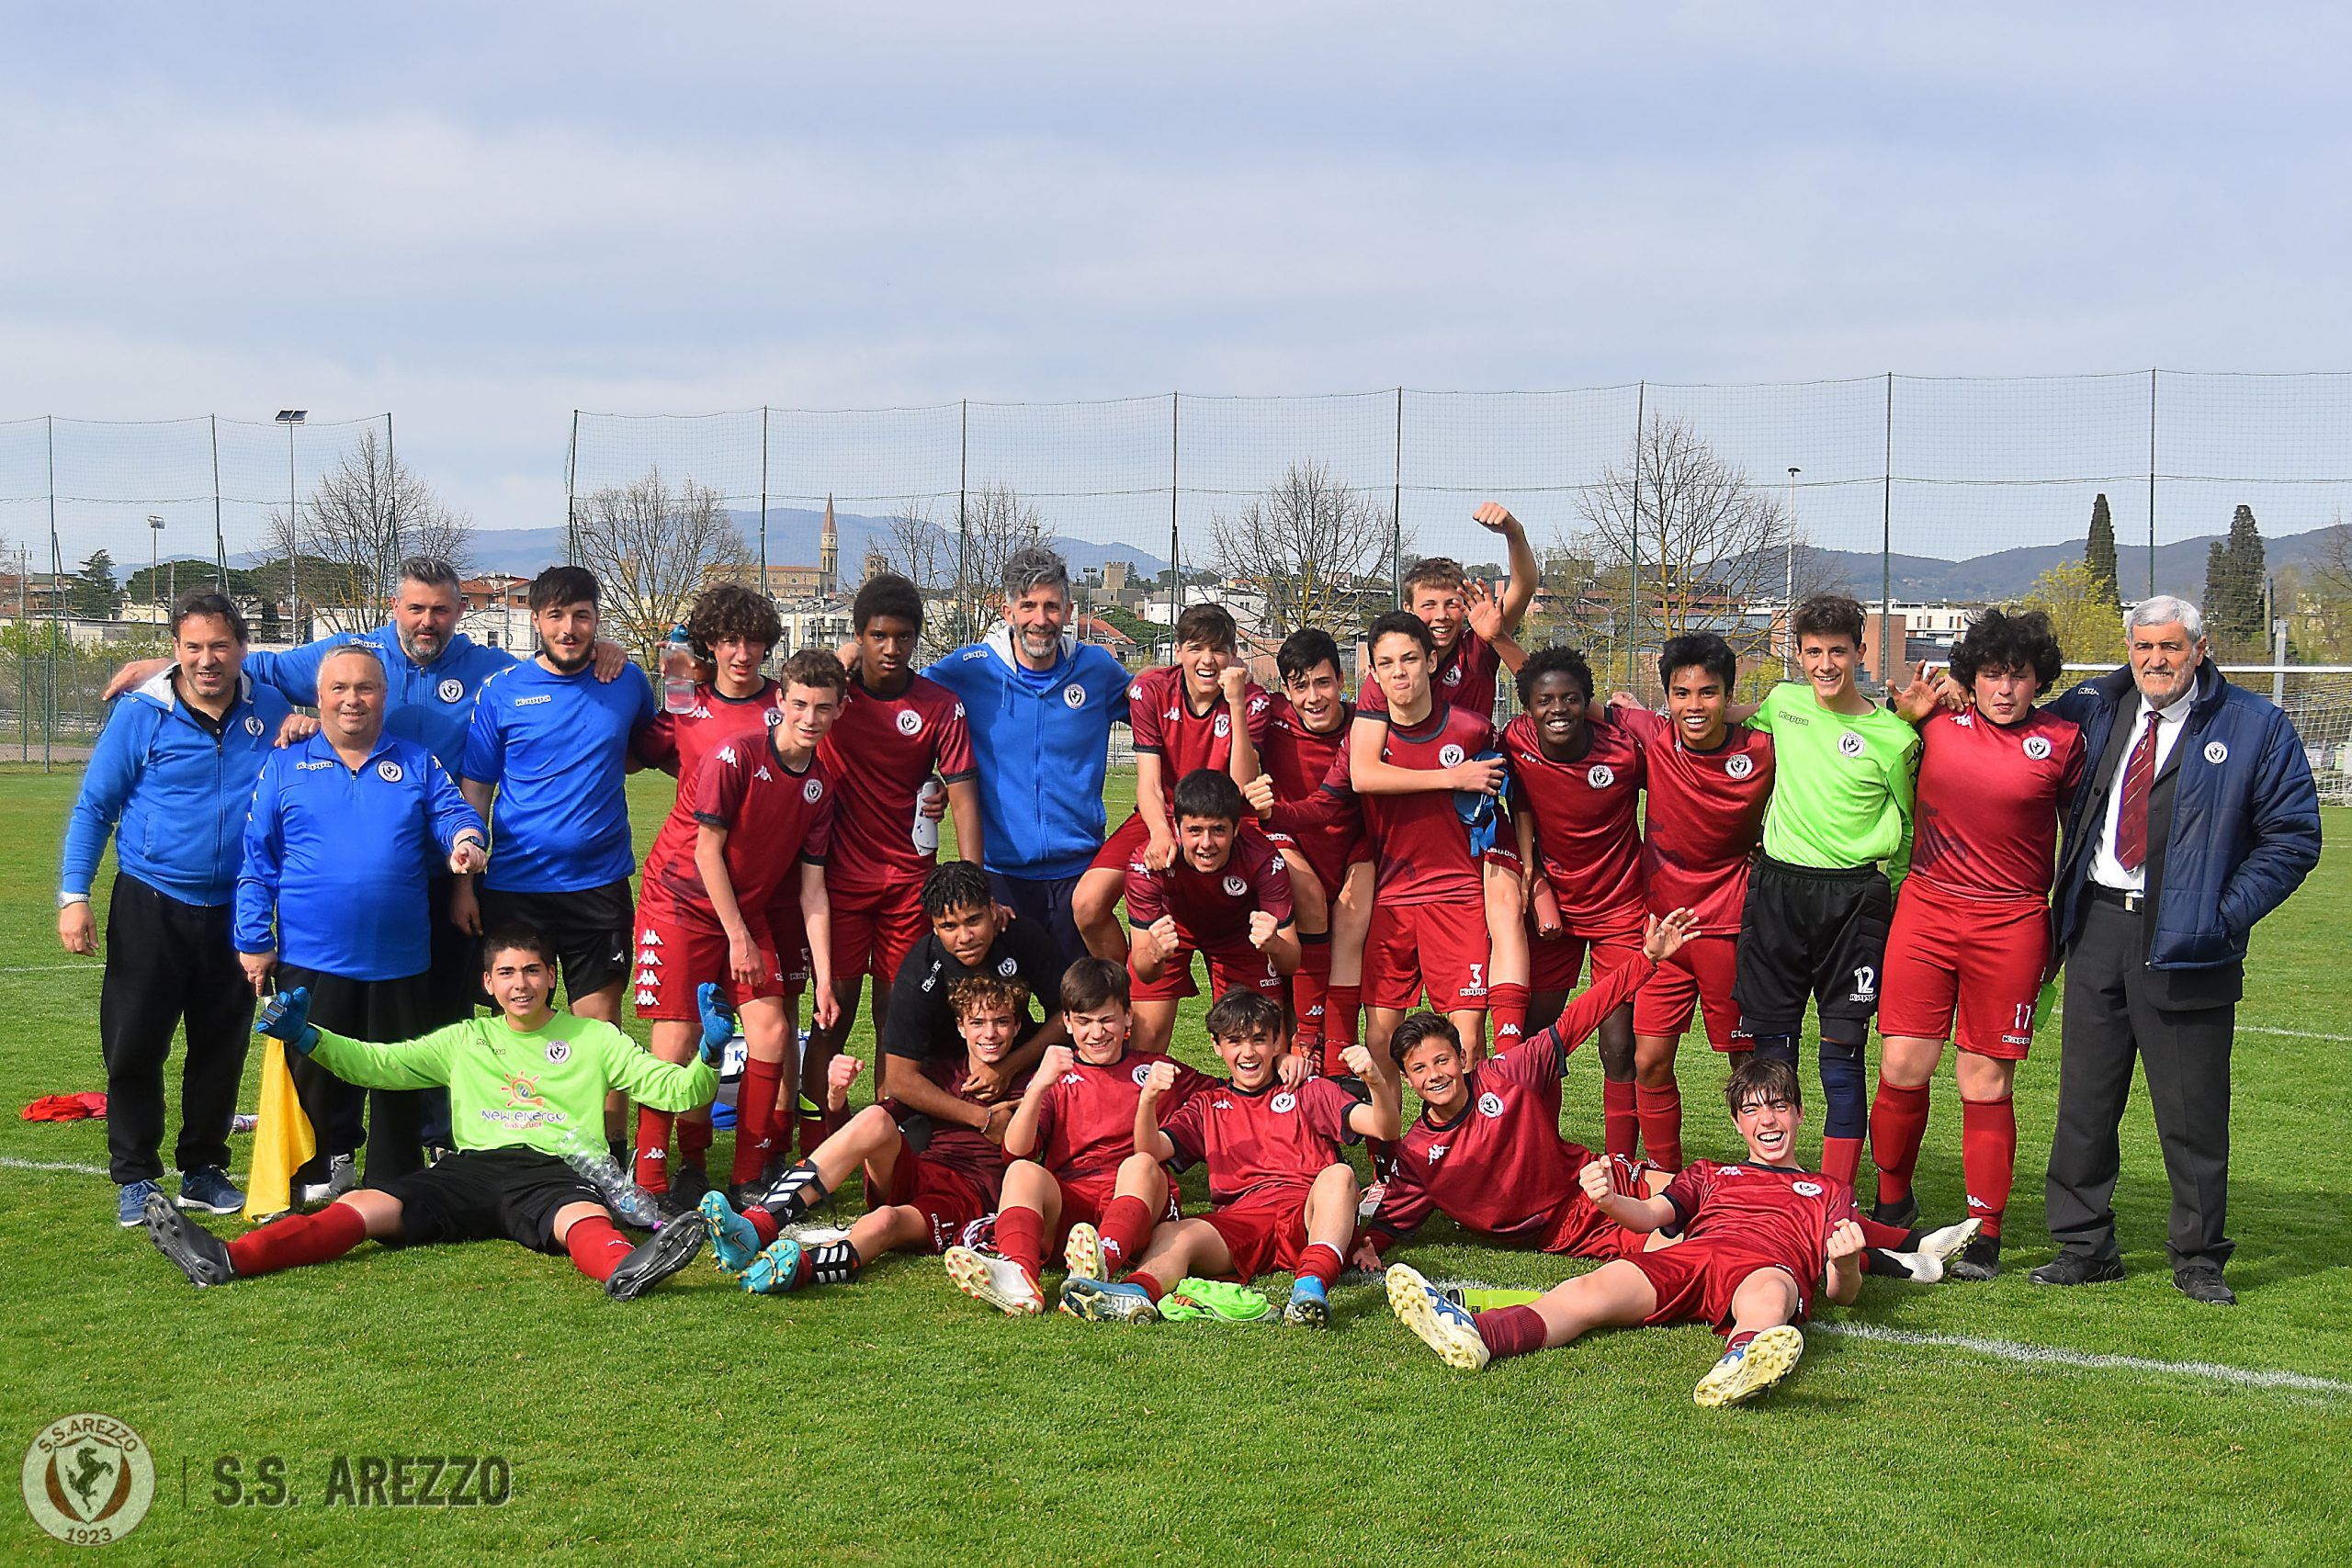 Successo esterno per la Juniores, l’Under 15 SS Arezzo